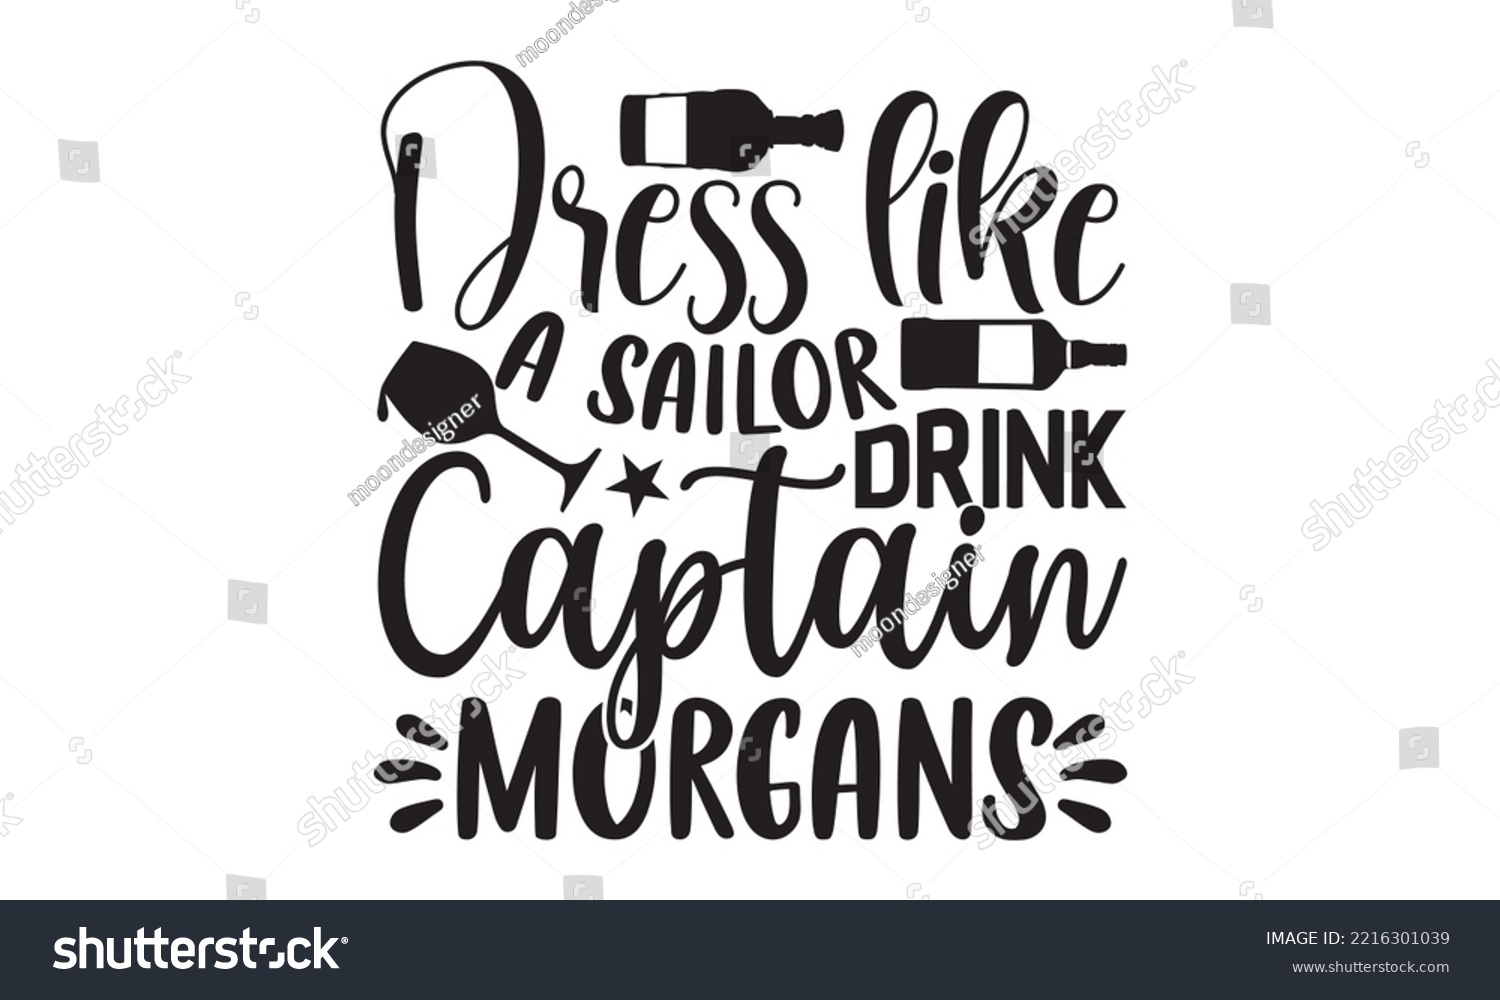 SVG of Dress like a sailor drink captain morgans - Alcohol SVG T Shirt design, Girl Beer Design, Prost, Pretzels and Beer, Vector EPS Editable Files, Alcohol funny quotes, Oktoberfest Alcohol SVG design,  EP svg